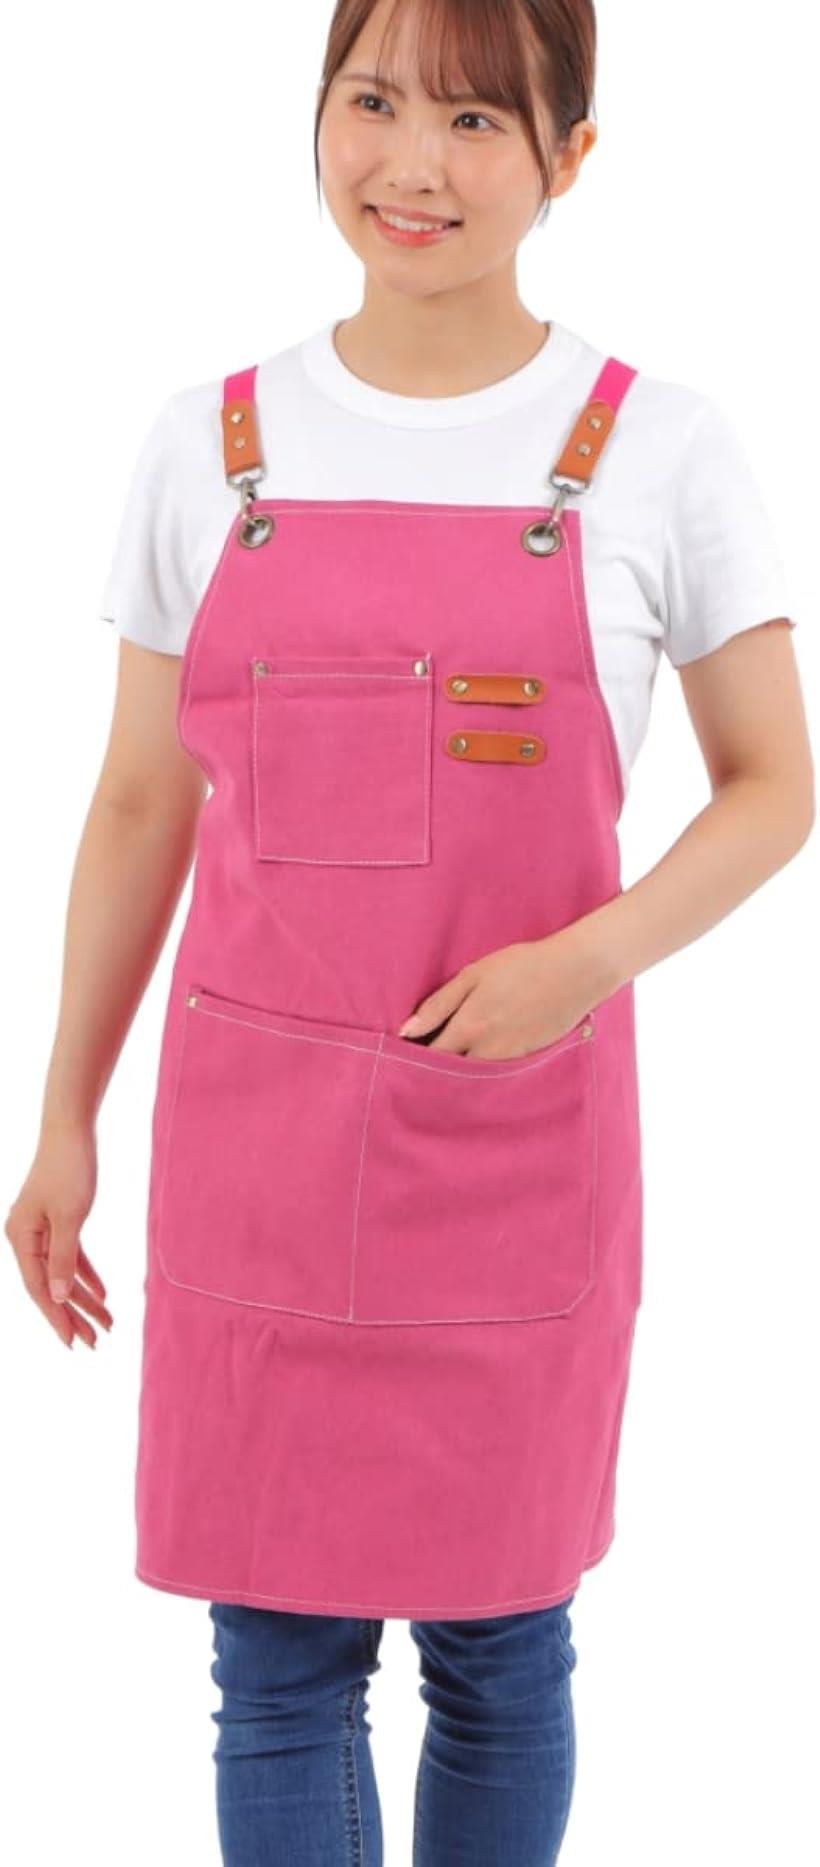 エプロン 作業用エプロン メンズエプロン ワークエプロン シンプル 複数ポケット付き 男女兼用 ピンク 日本